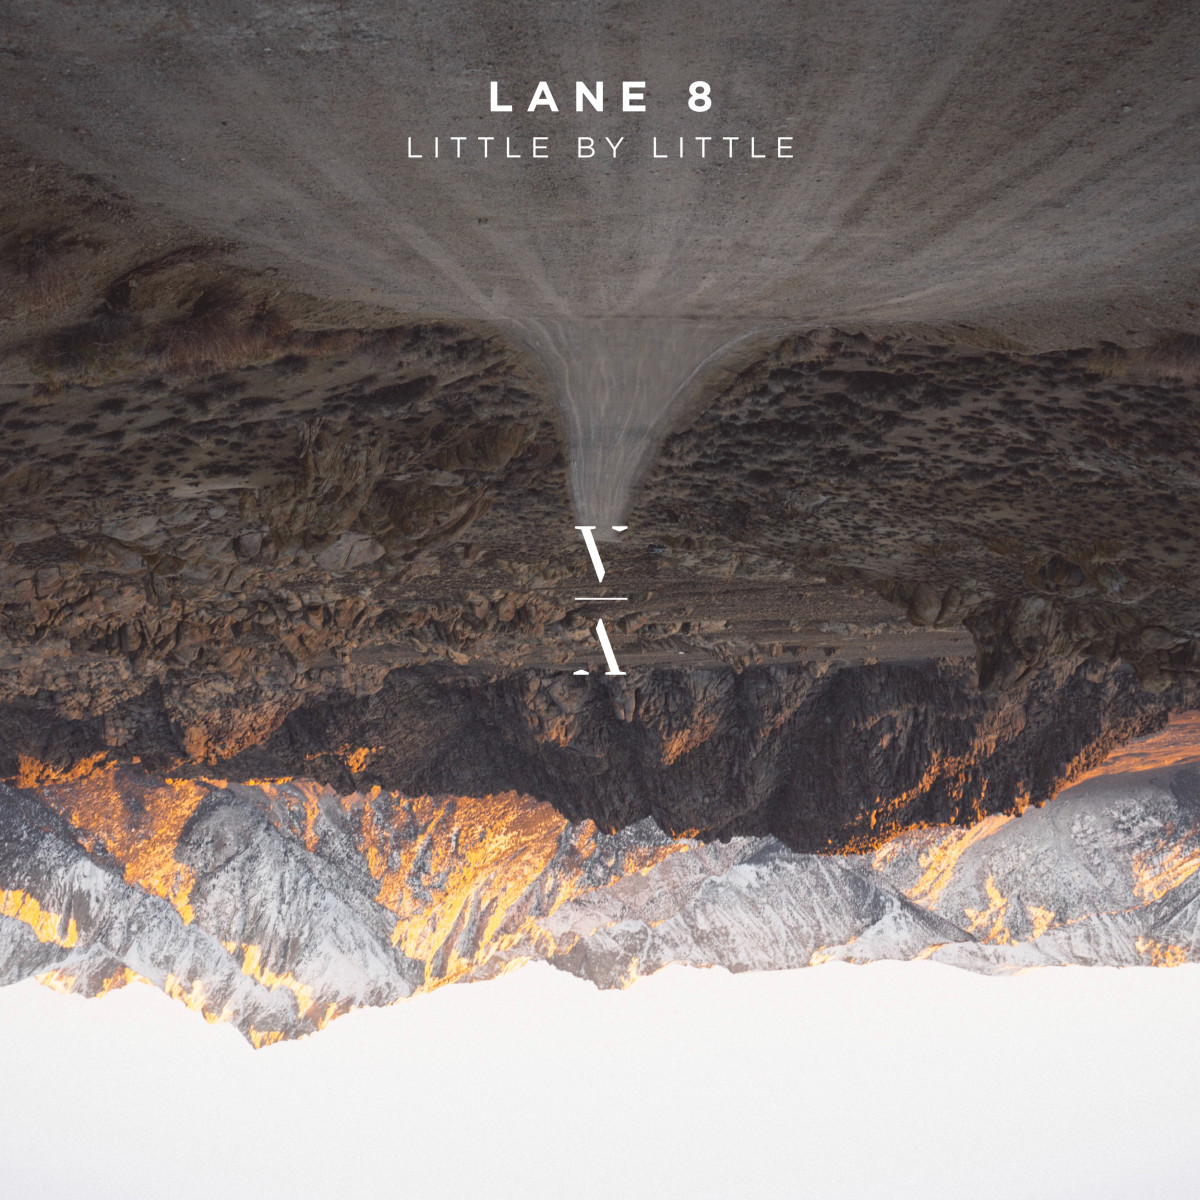 LANE8-LITTLE-BY-LITTLE-ALBUM-2500pxls-RGB